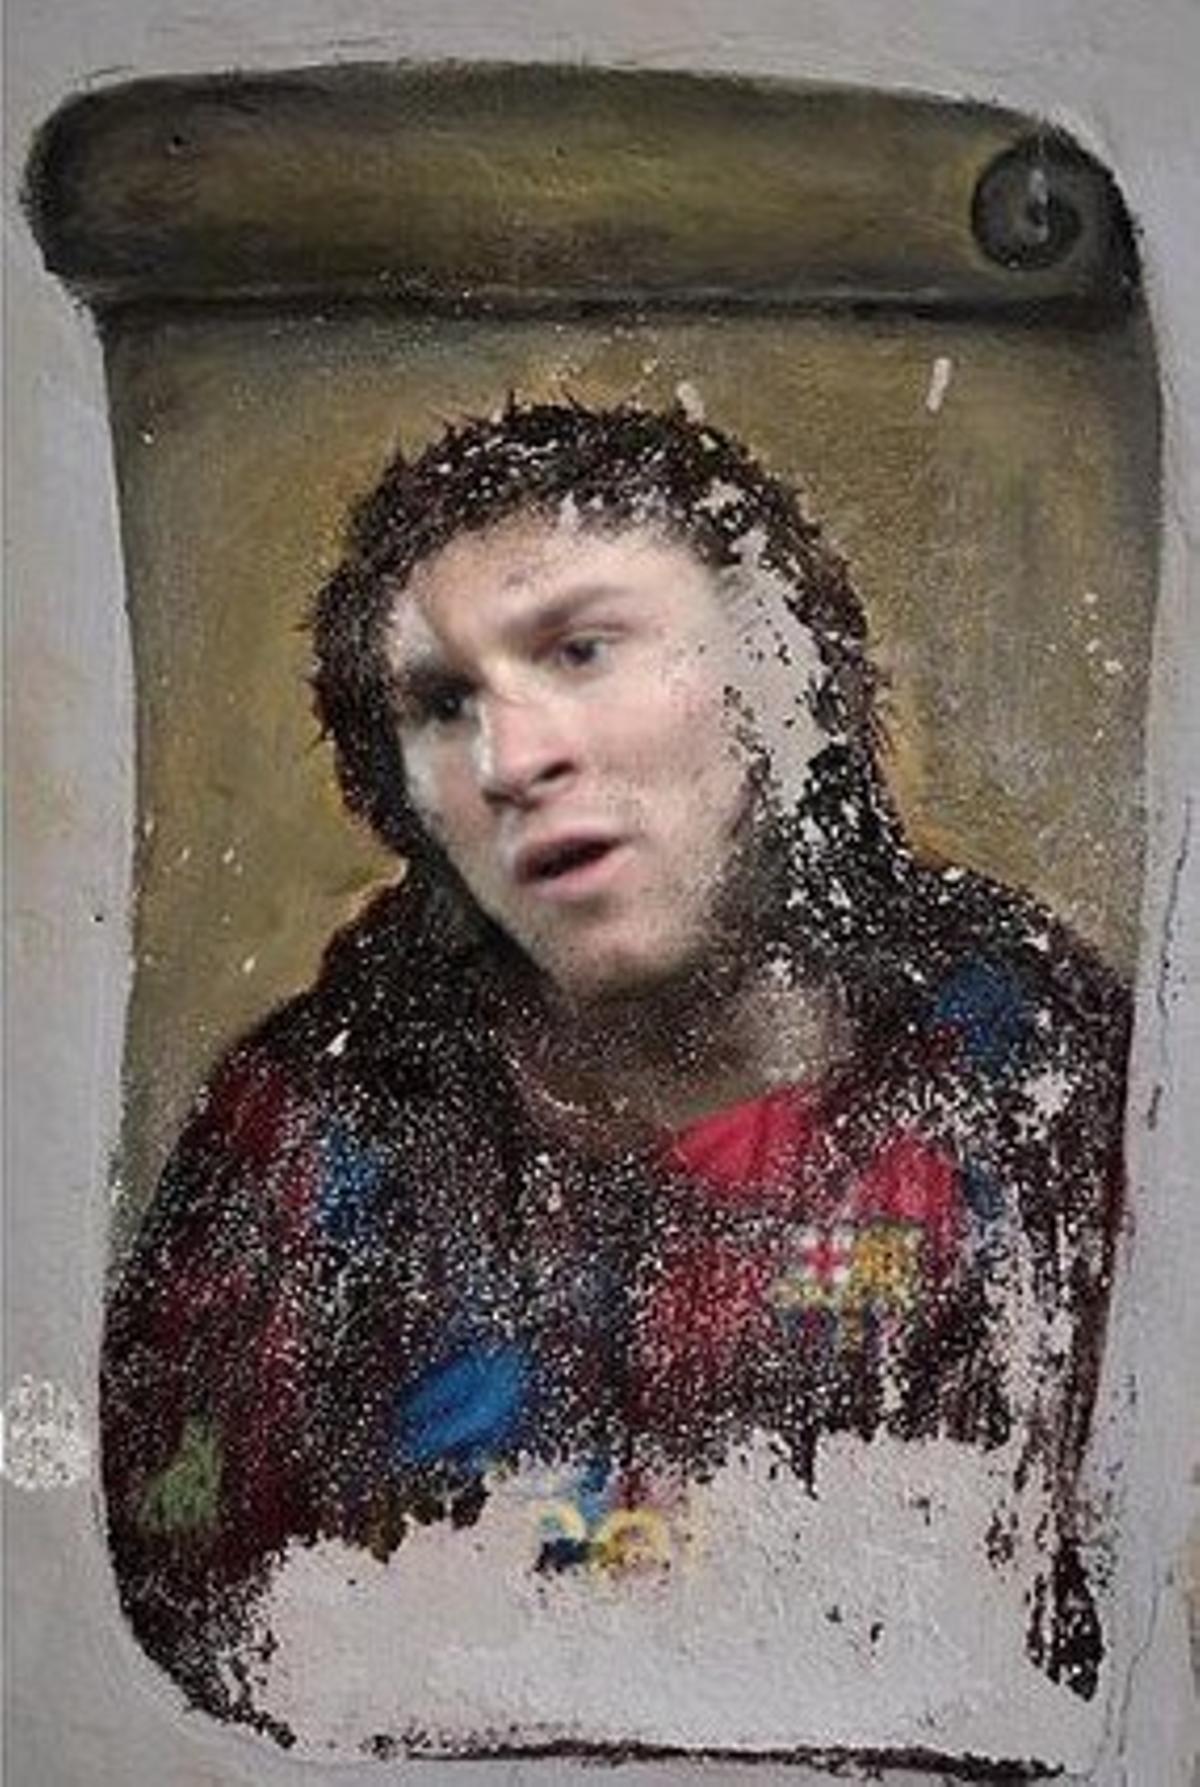 Muntatge de la cara de Messi amb l’eccehomo.